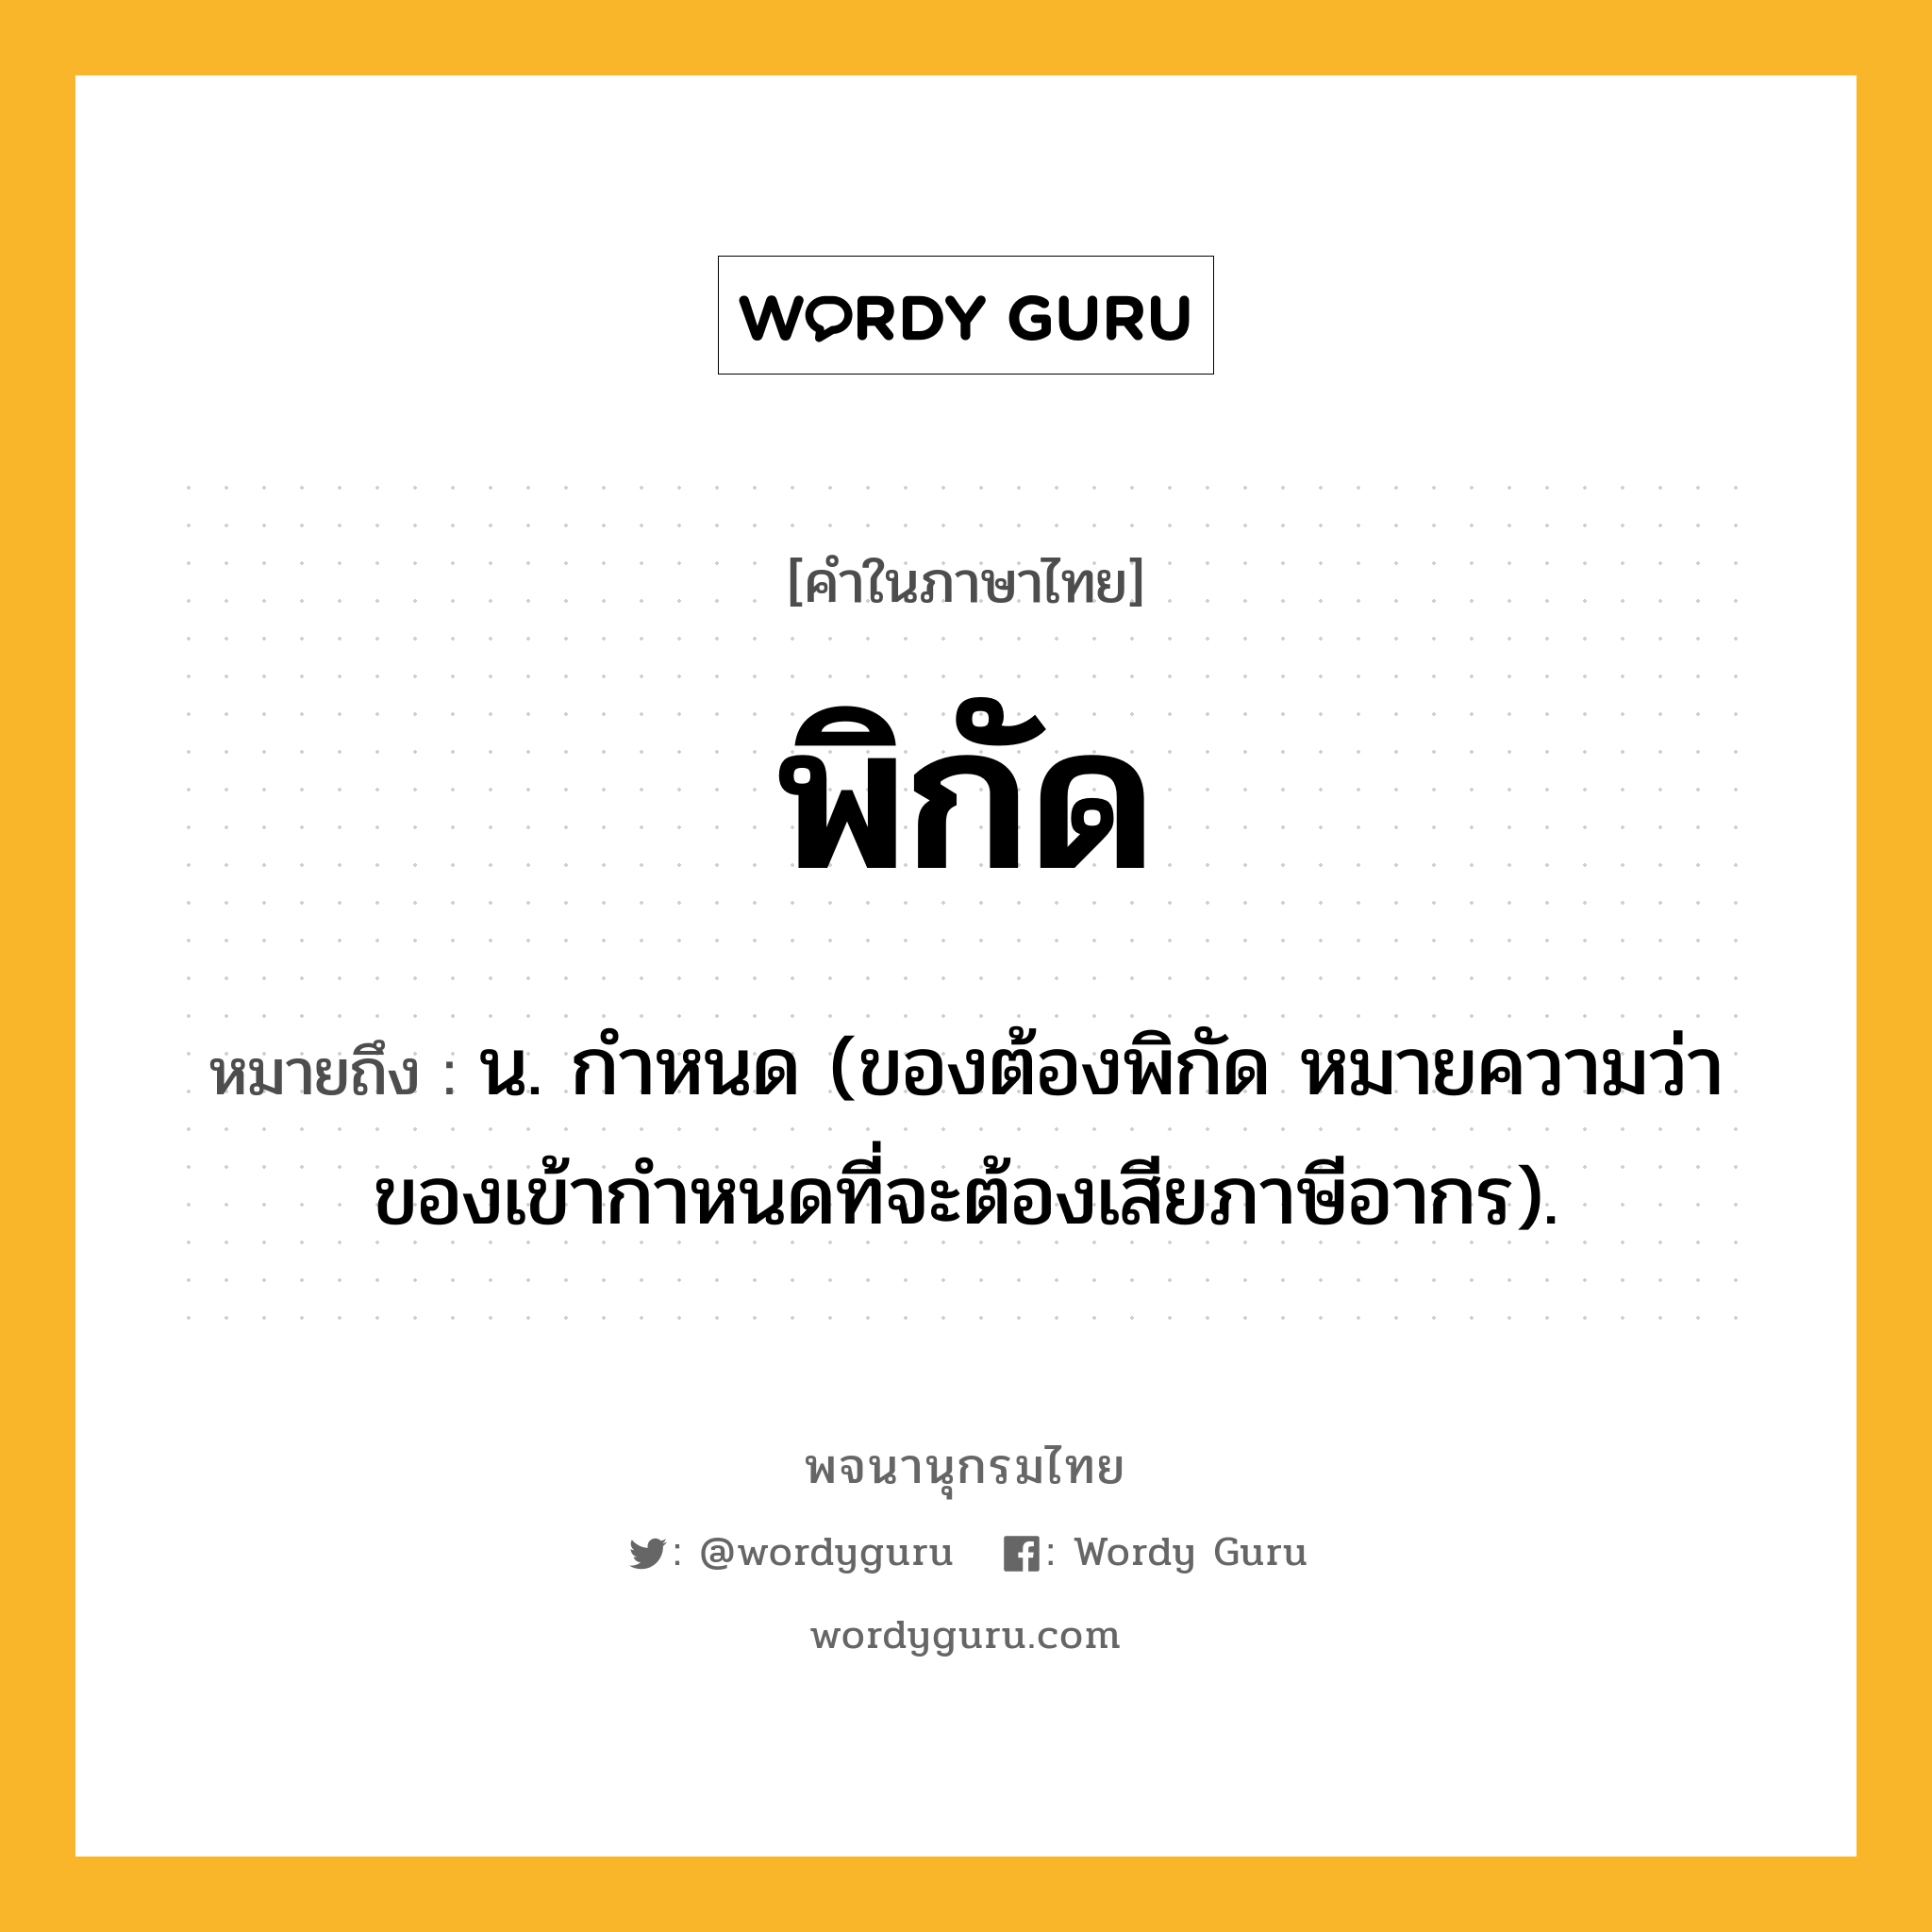 พิกัด หมายถึงอะไร?, คำในภาษาไทย พิกัด หมายถึง น. กําหนด (ของต้องพิกัด หมายความว่า ของเข้ากําหนดที่จะต้องเสียภาษีอากร).